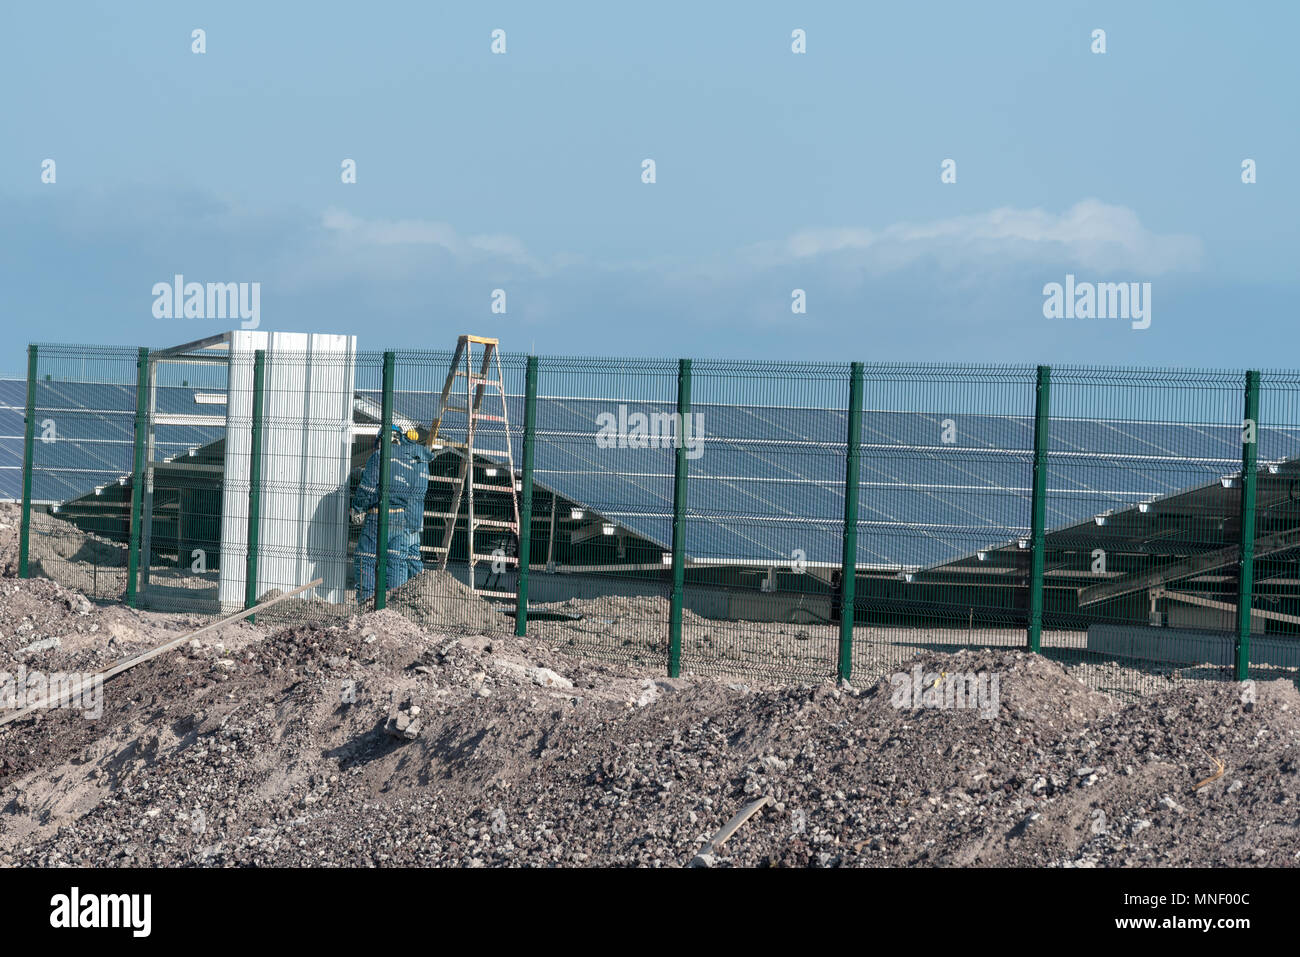 Ferme solaire en construction à Puerto Villamil, Isabela Island, îles Galapagos, en Équateur. Banque D'Images